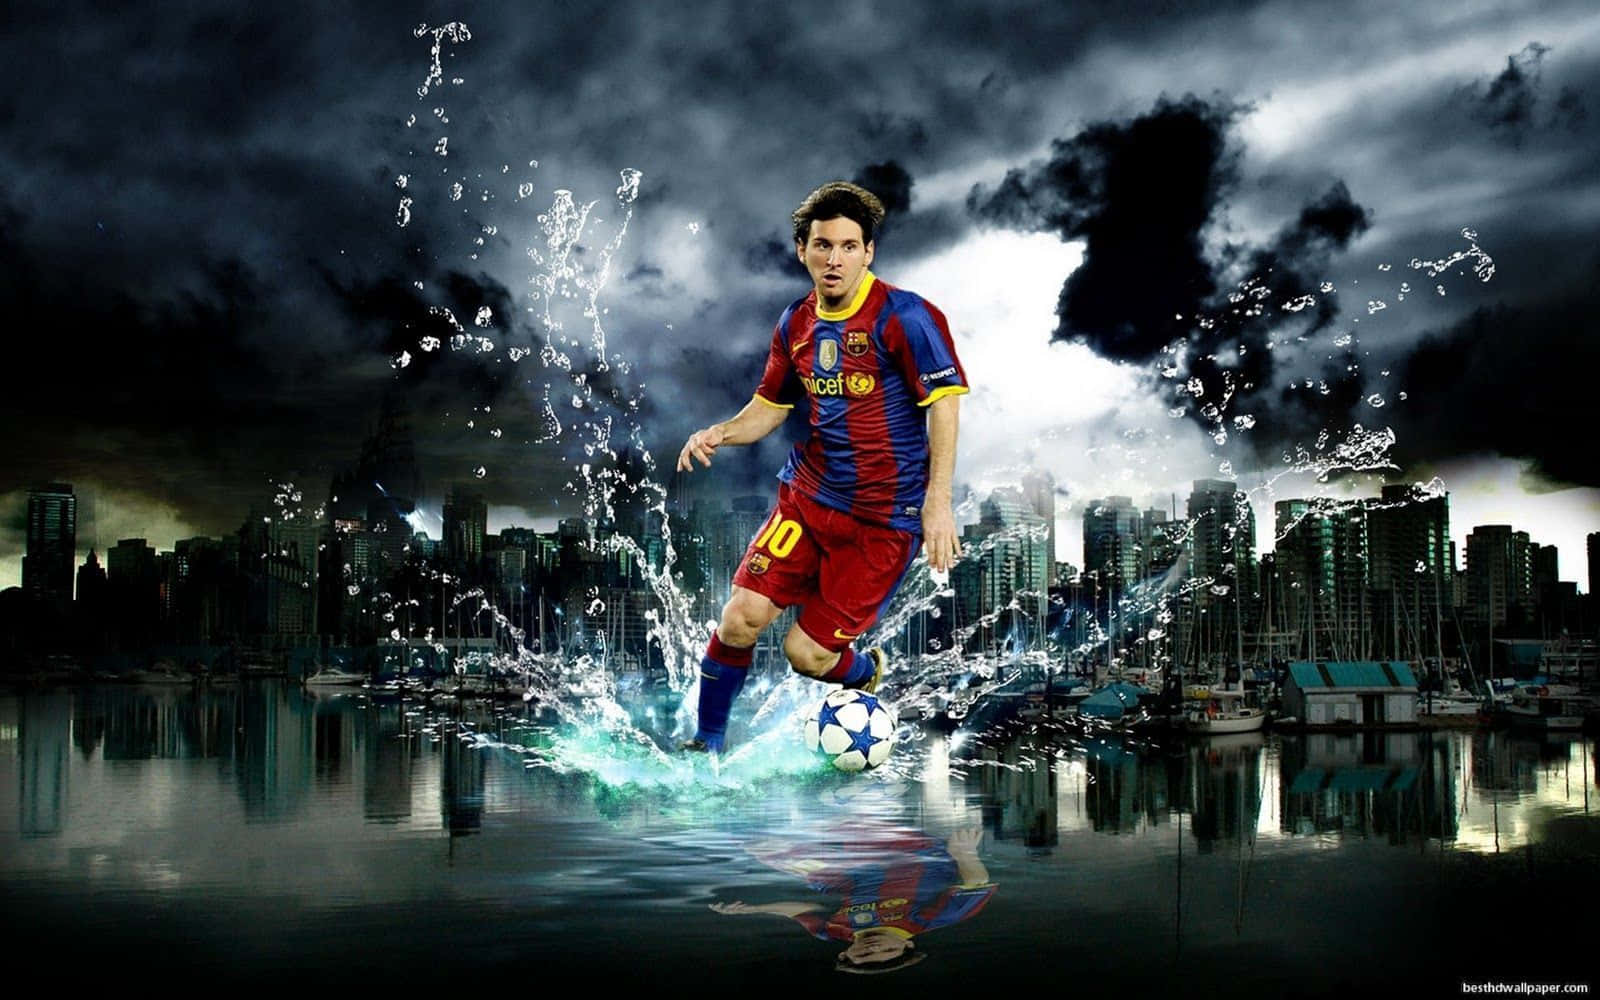 Tauchensie Mit Diesem Coolen Hintergrundbild Tiefer In Die Welt Von Lionel Messi Ein. Wallpaper